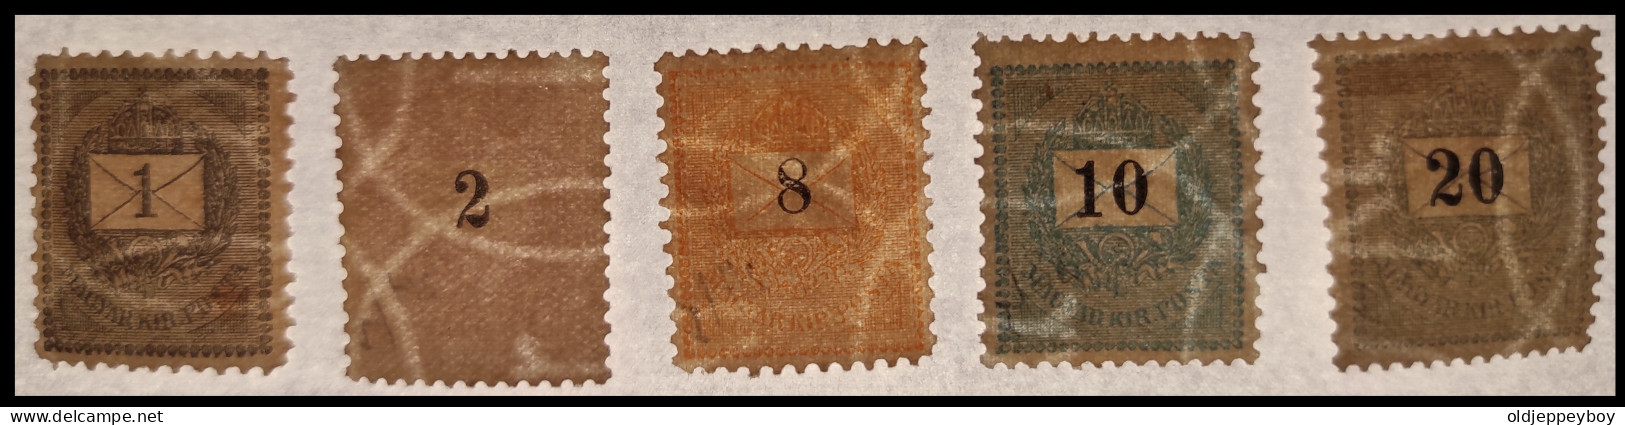 HONGRIE - HUNGARY - UNGARN / 1888 Typo. Perf. 12 X 11 1/2  & 11.5 X 11.5 WMK 132 RARE HIGH VALUE MLH FULL GUM - Unused Stamps